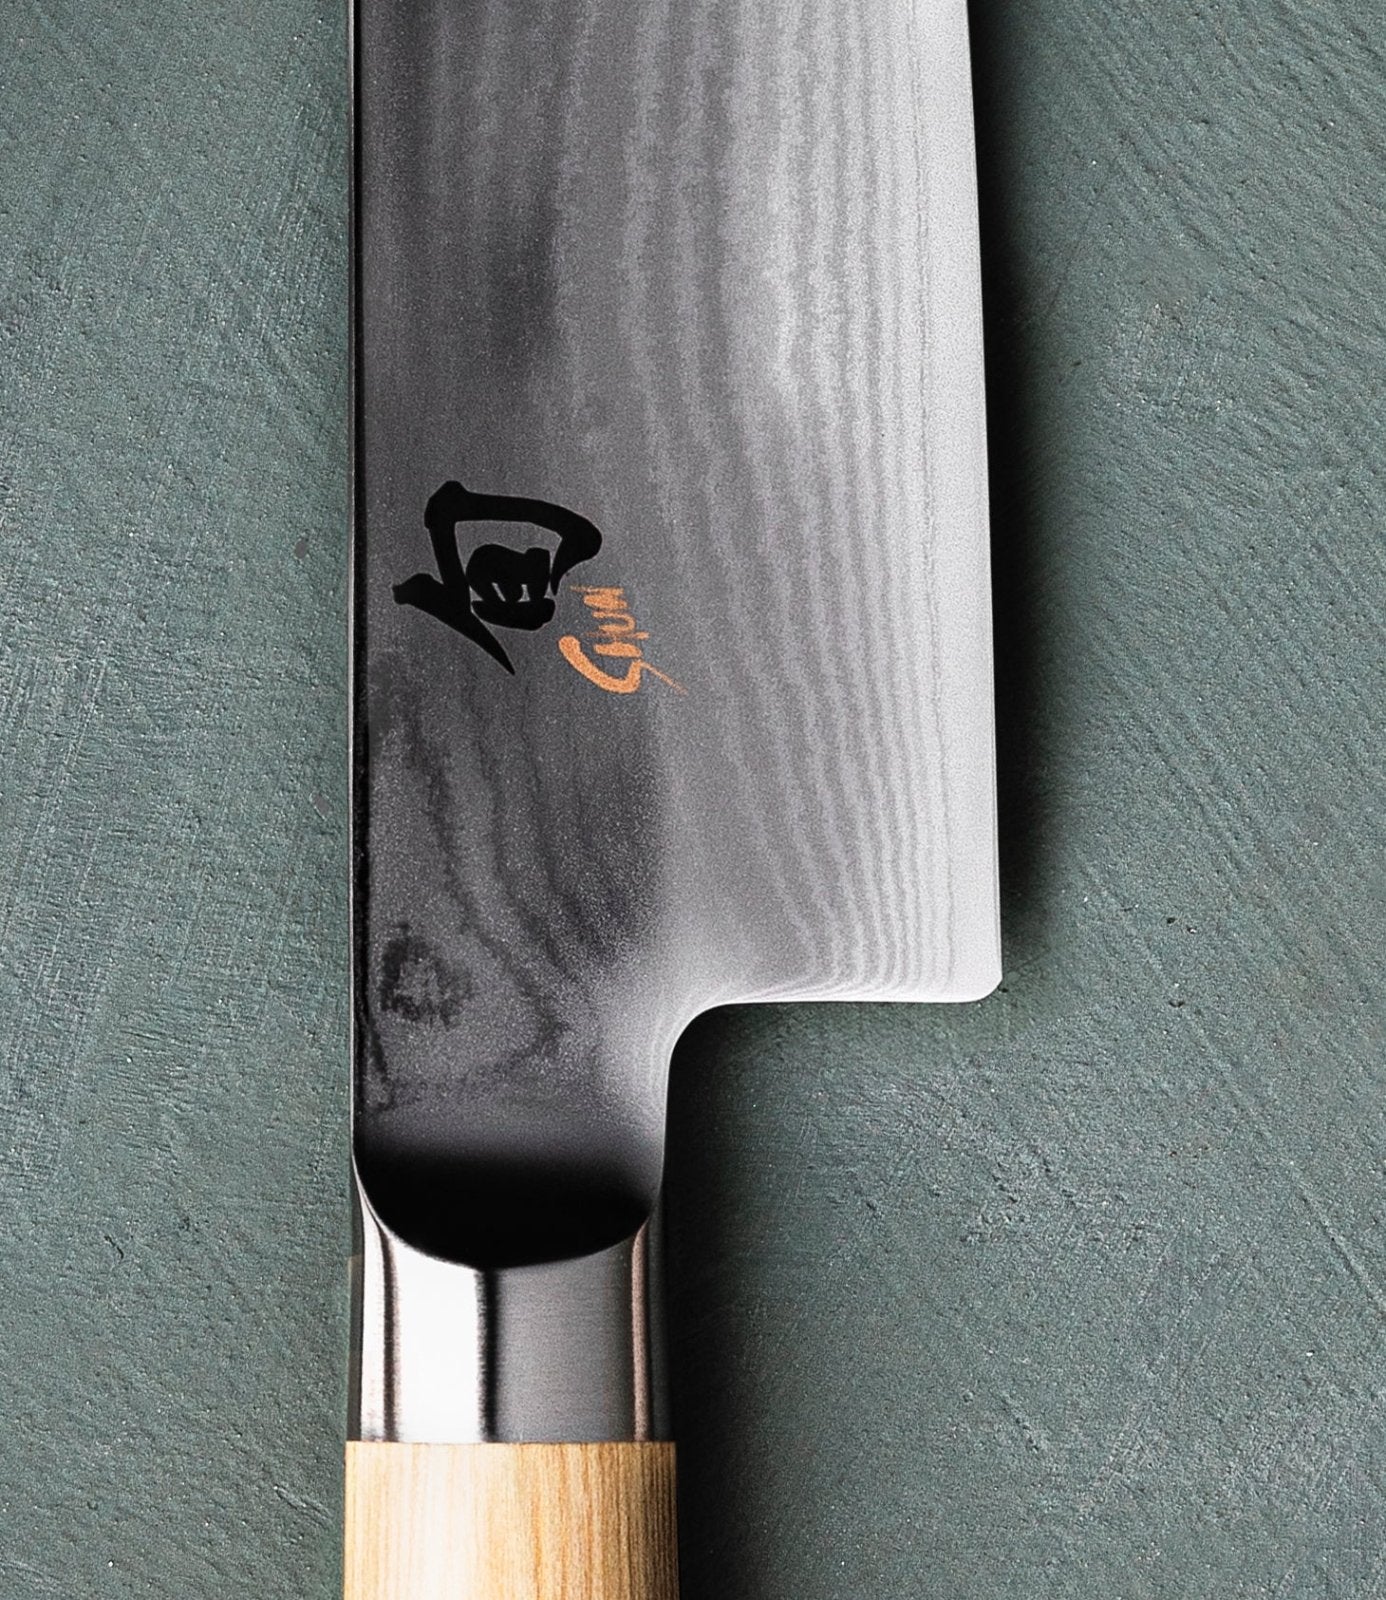 KAI Shun White 15cm Utility Knife - KAI-DM-0701W - The Cotswold Knife Company